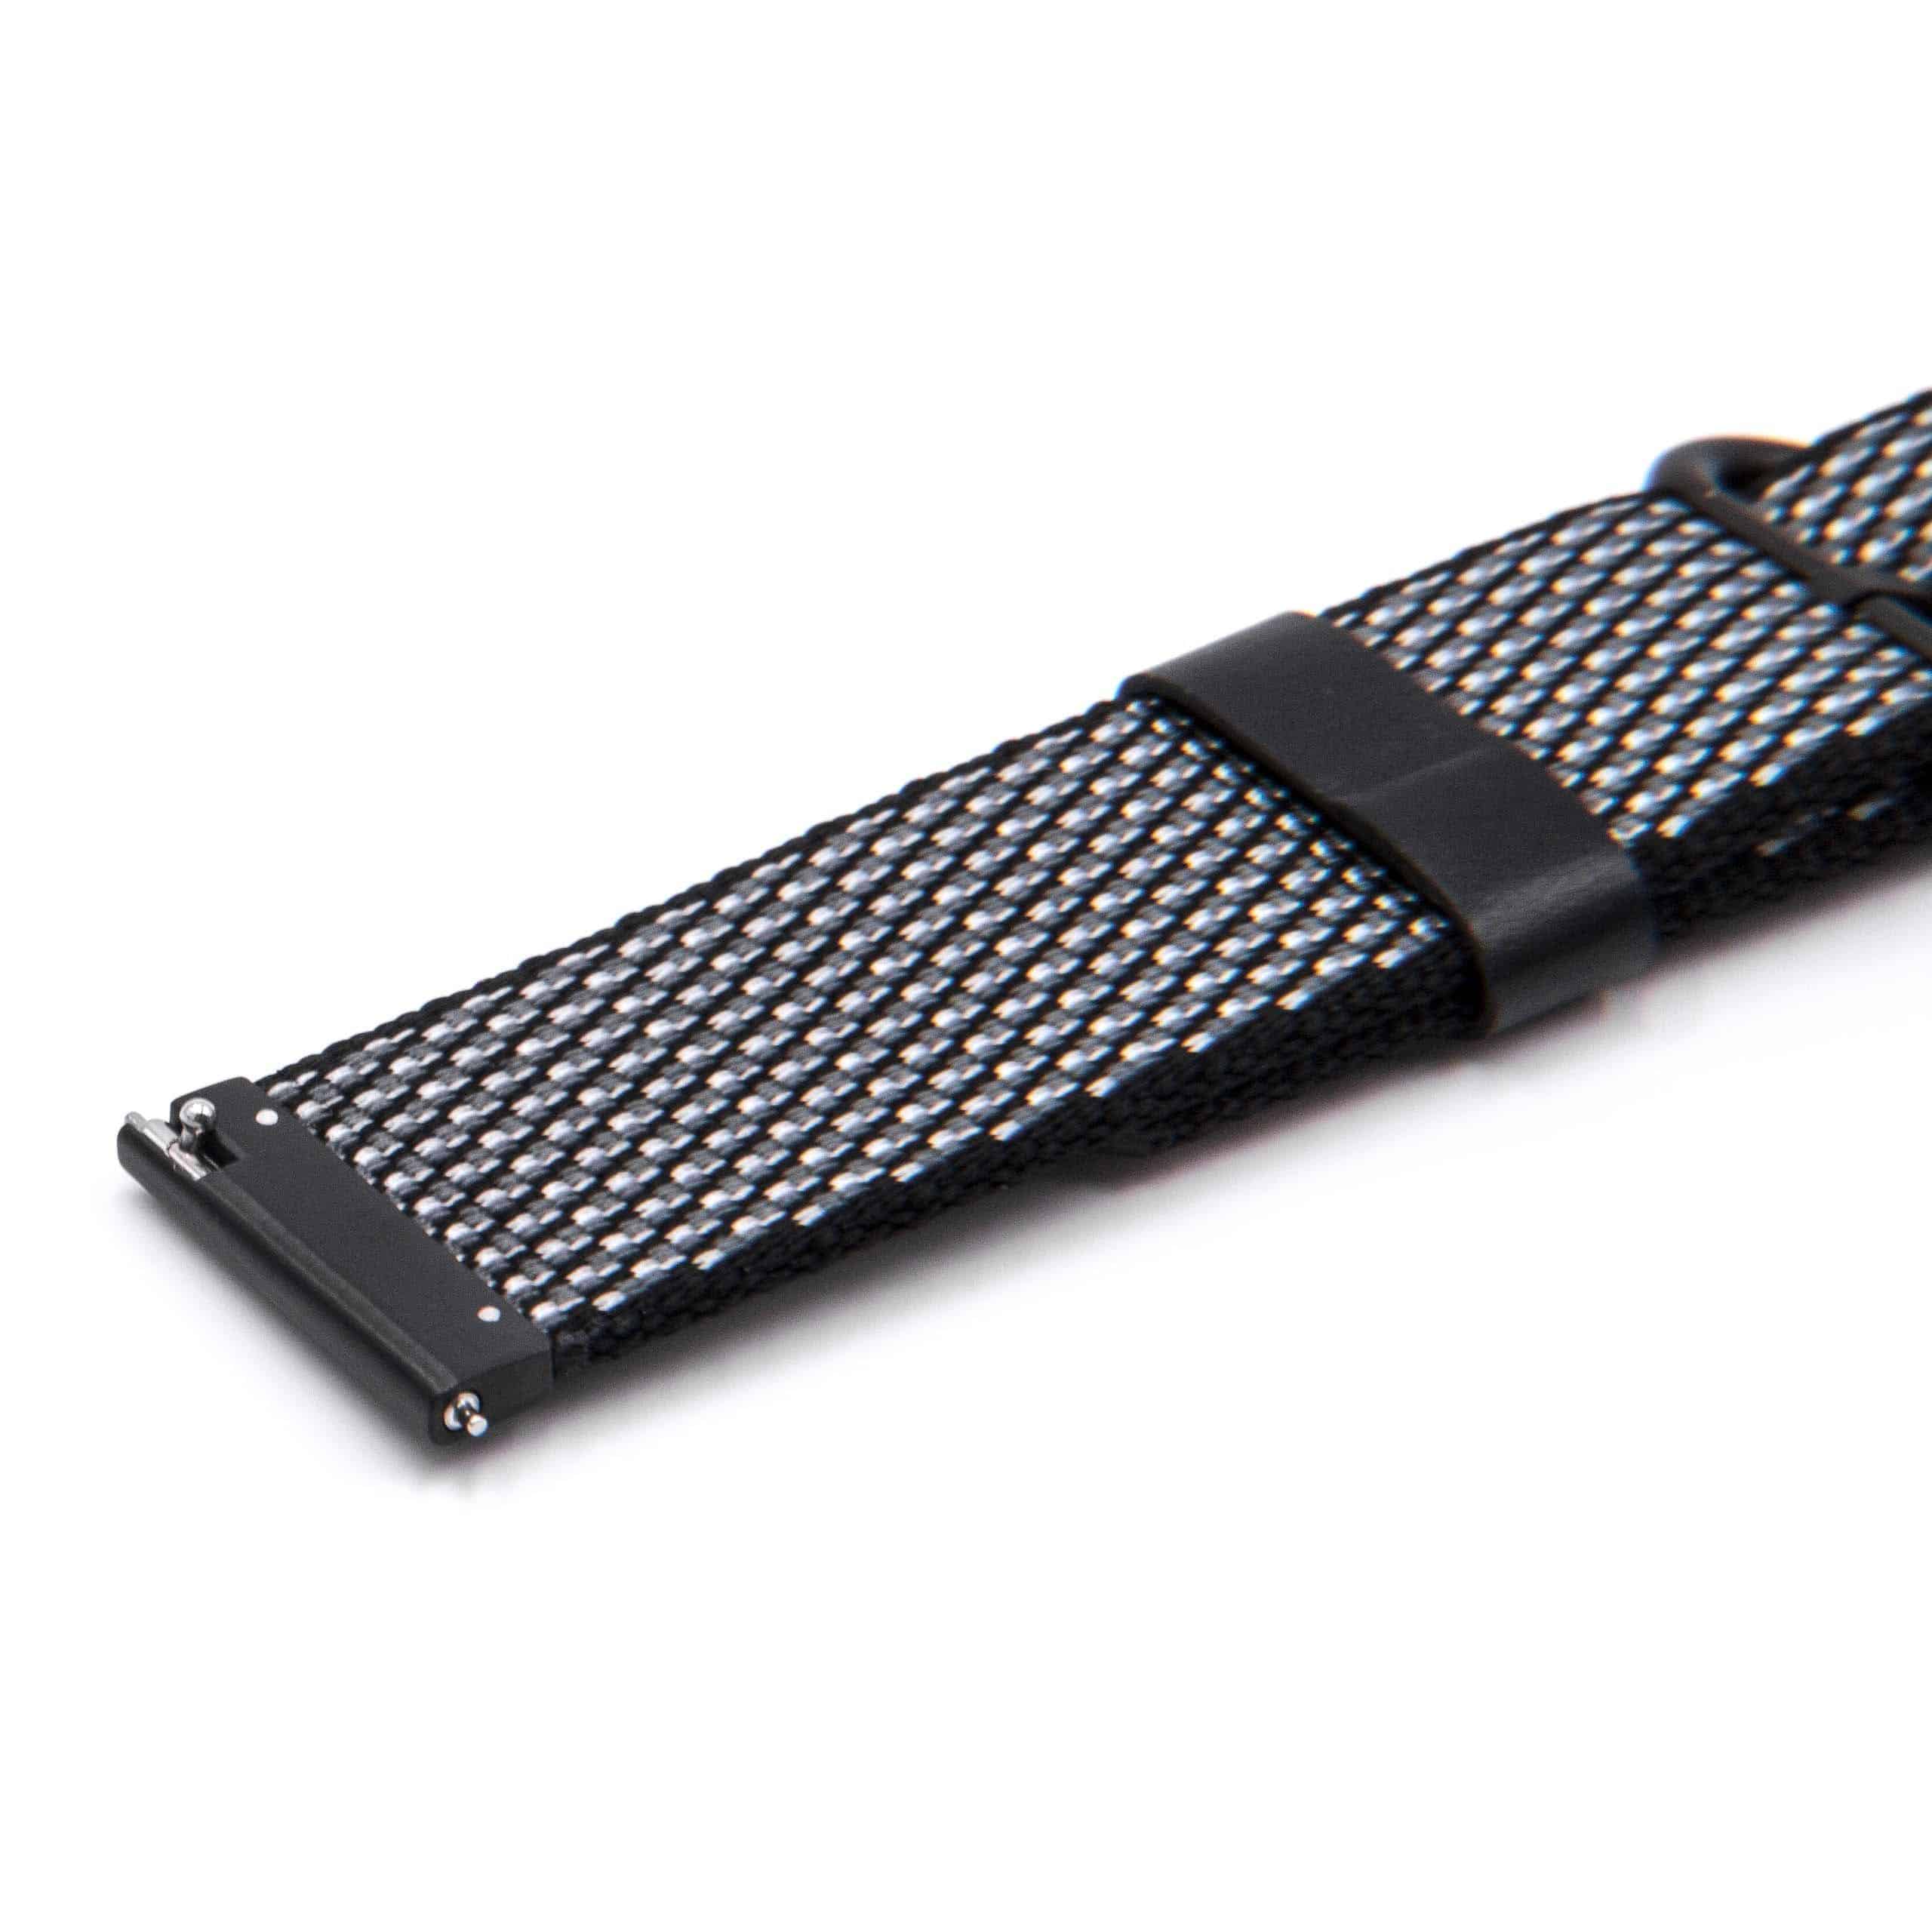 Armband für LG Smartwatch u.a. - 12,3cm + 8,5 cm lang, 22mm breit, Nylon, schwarz, weiß